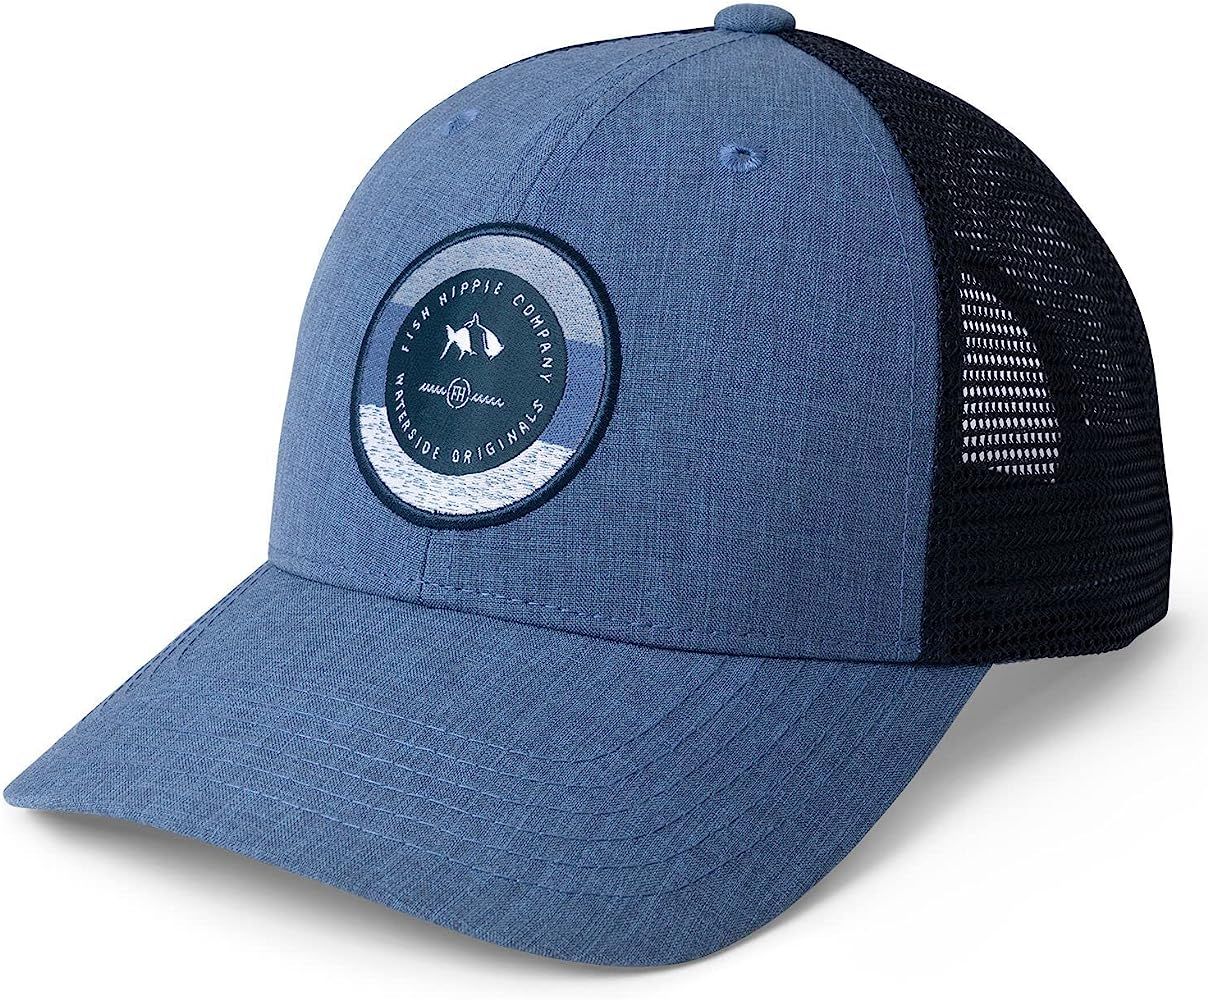 Fish Hippie Informer Trucker Hat Blue OS | Amazon (US)